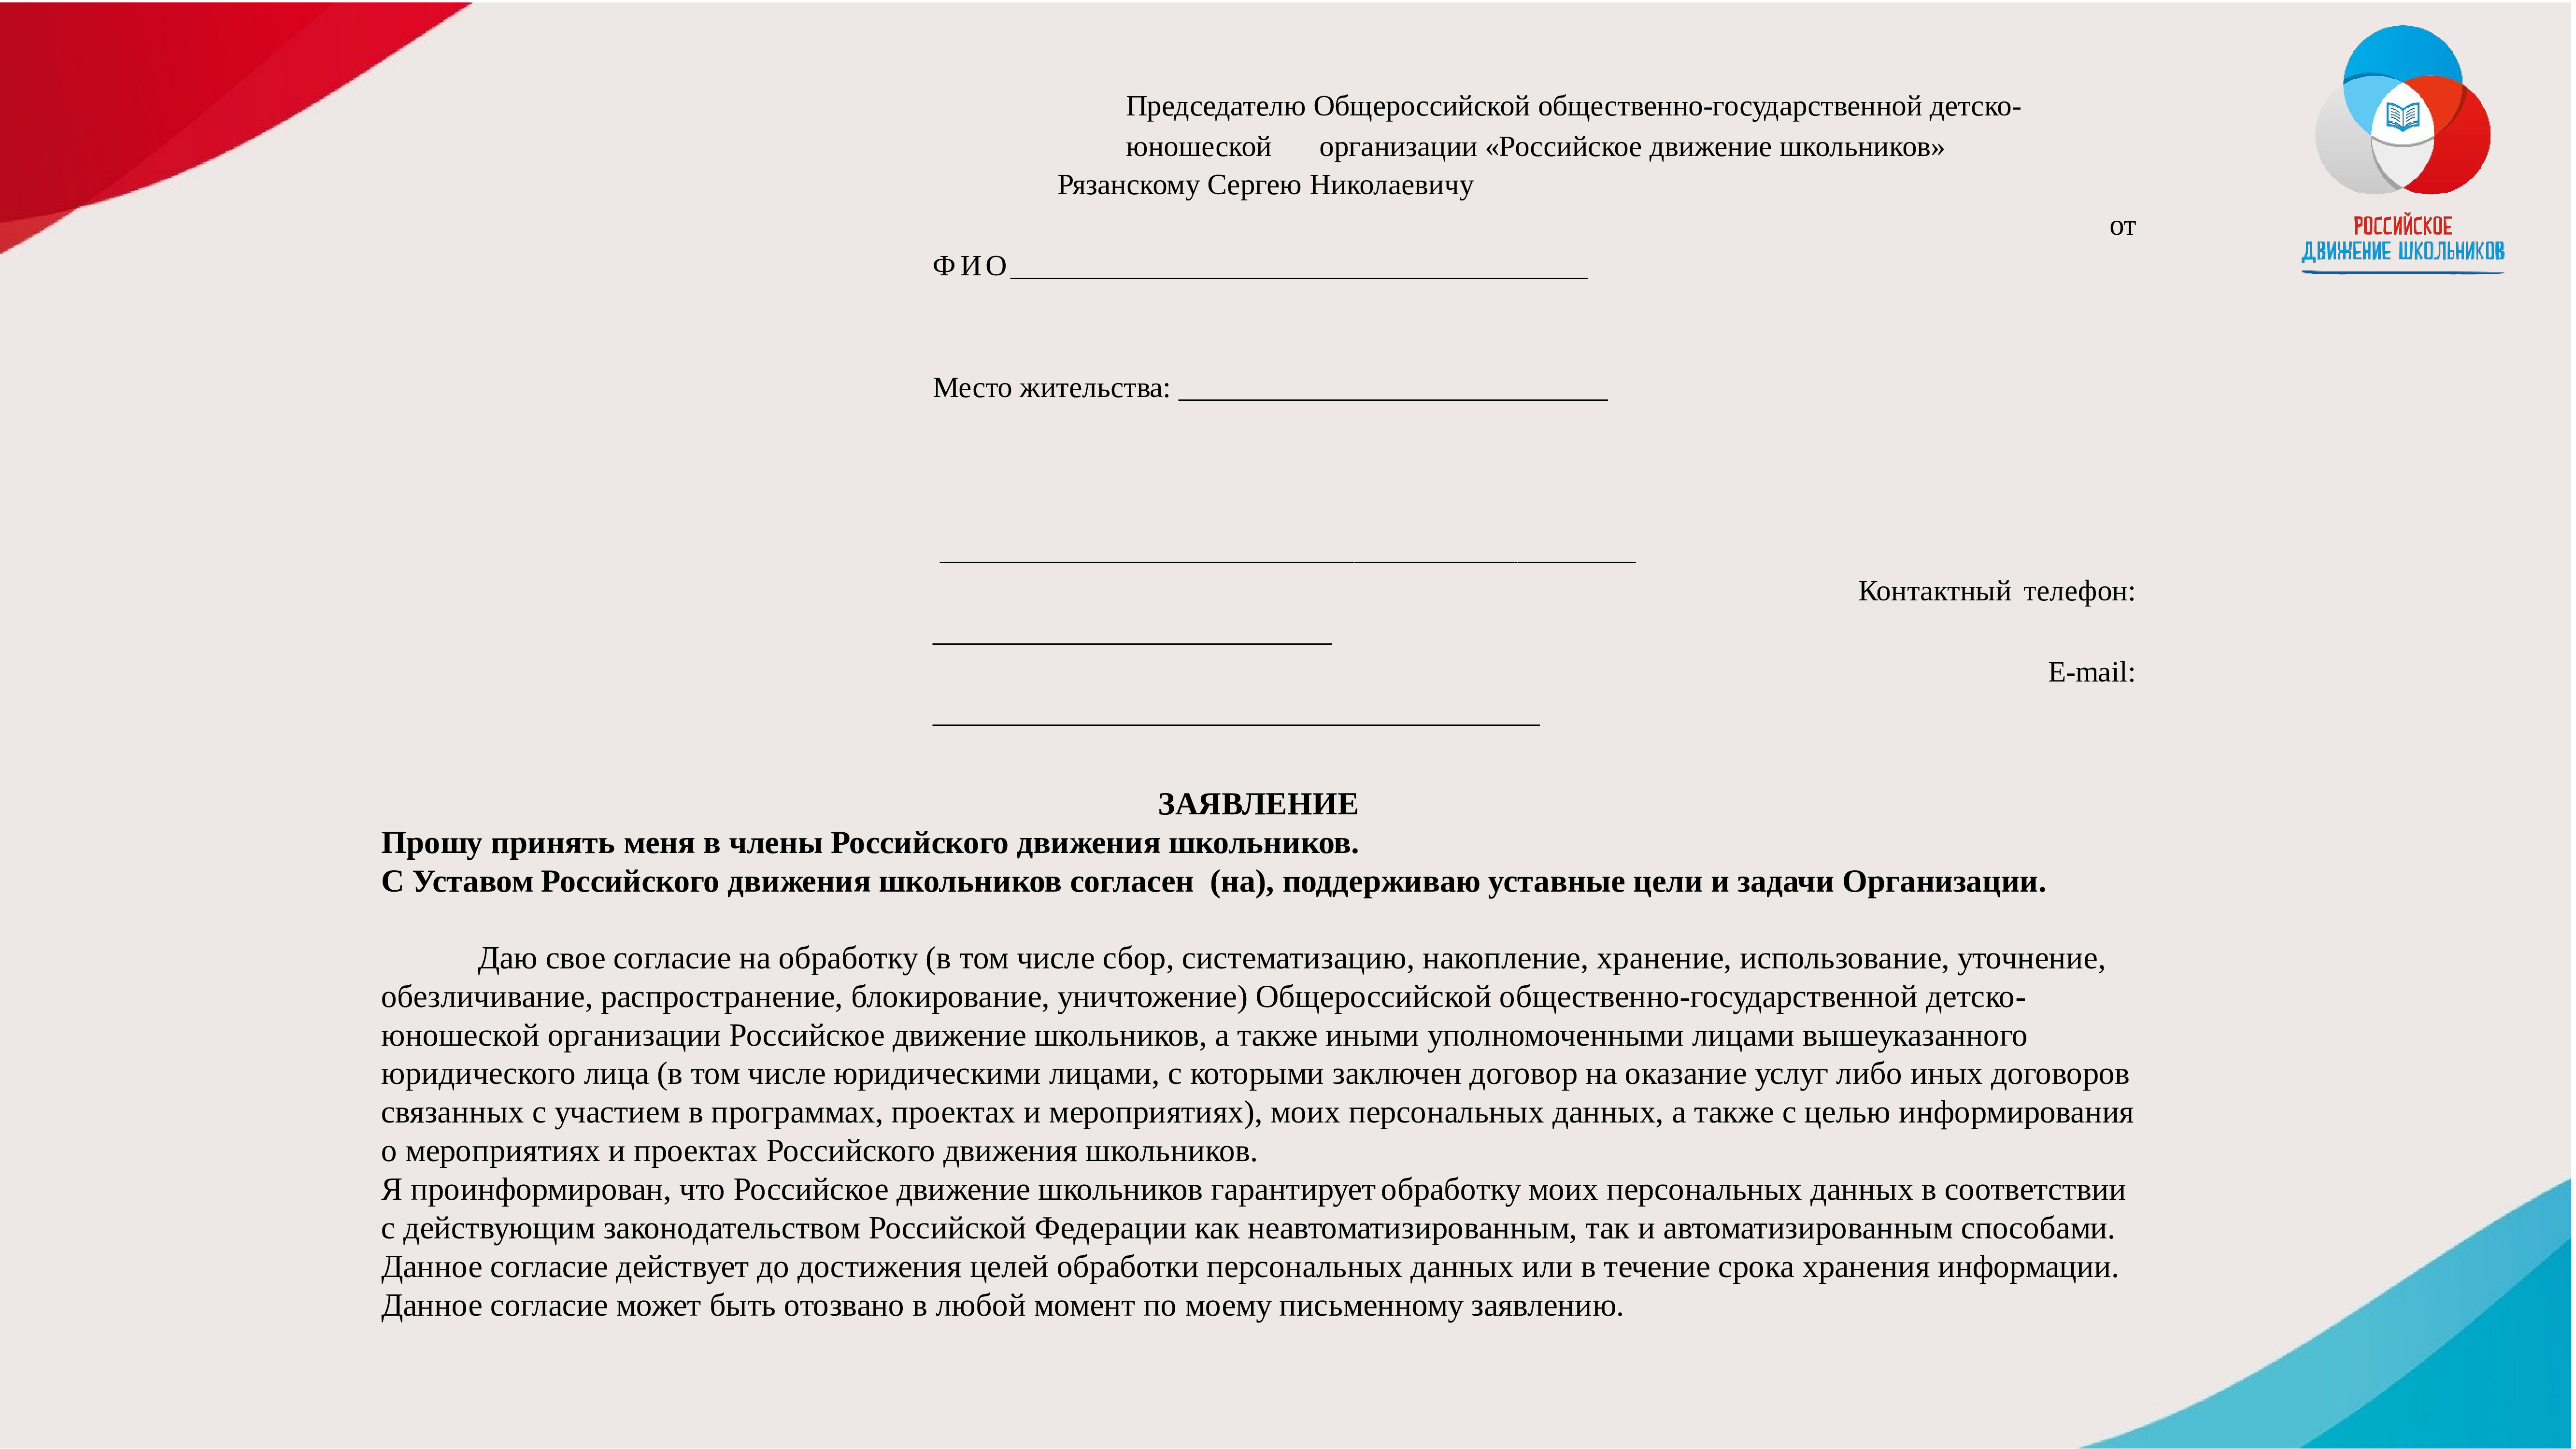 Образец заявление на согласие российское движение школьников